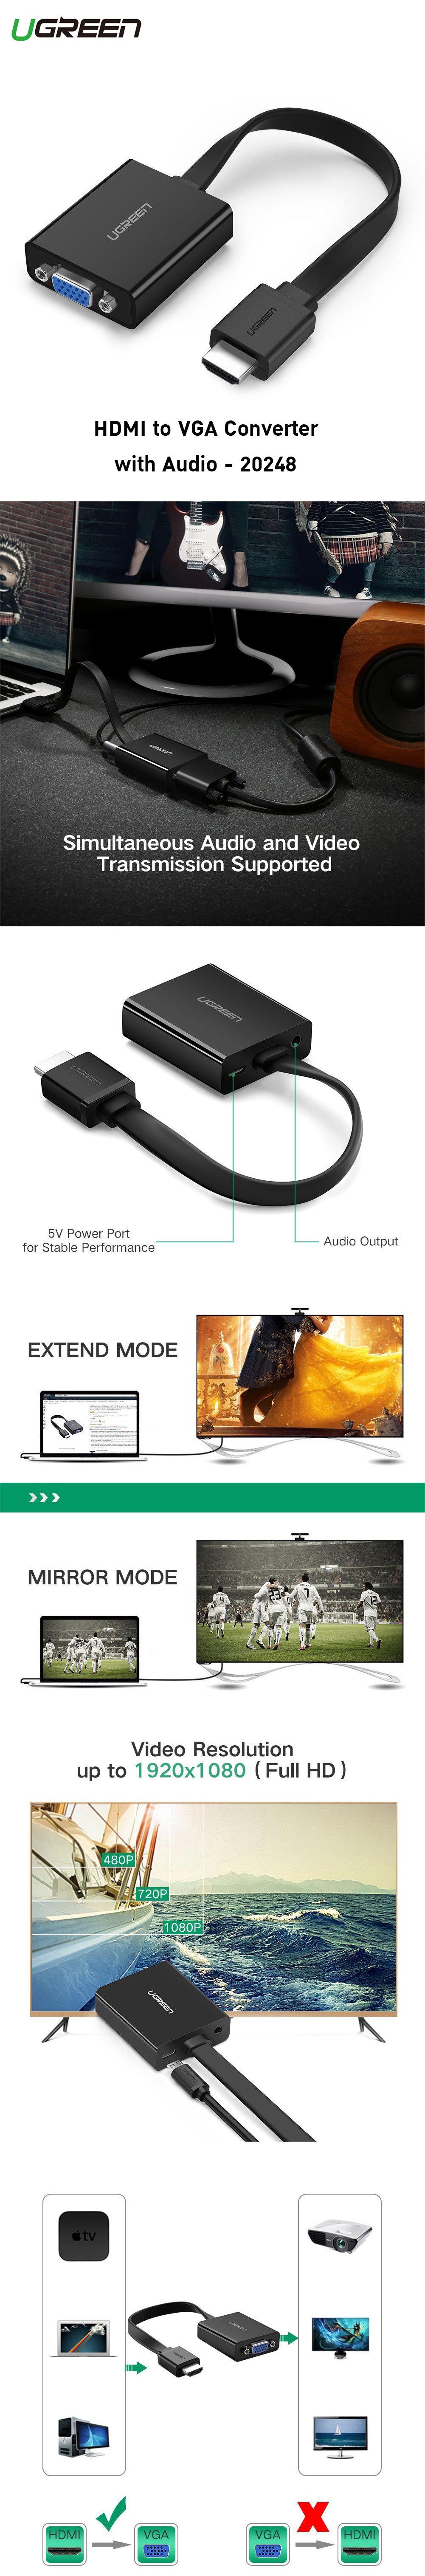 ซื้อ อะแดปเตอร์ CS@ Ugreen HDMI to VGA Support 3.5MM Audio with Micro USB Port (40248), อะแดปเตอร์ต่อภาพวิดีโอ, อะแดปเตอร์ของแท้, อะแดปเตอร์ยี่ห้อไหนดี, อะแดปเตอร์แปลงสัญญาณ , อะแดปเตอร์และสายเคเบิ้ล ราคาพิเศษ พร้อมโปรโมชั่นลดราคา ส่งฟรี ส่งเร็ว ทั่วไทย  